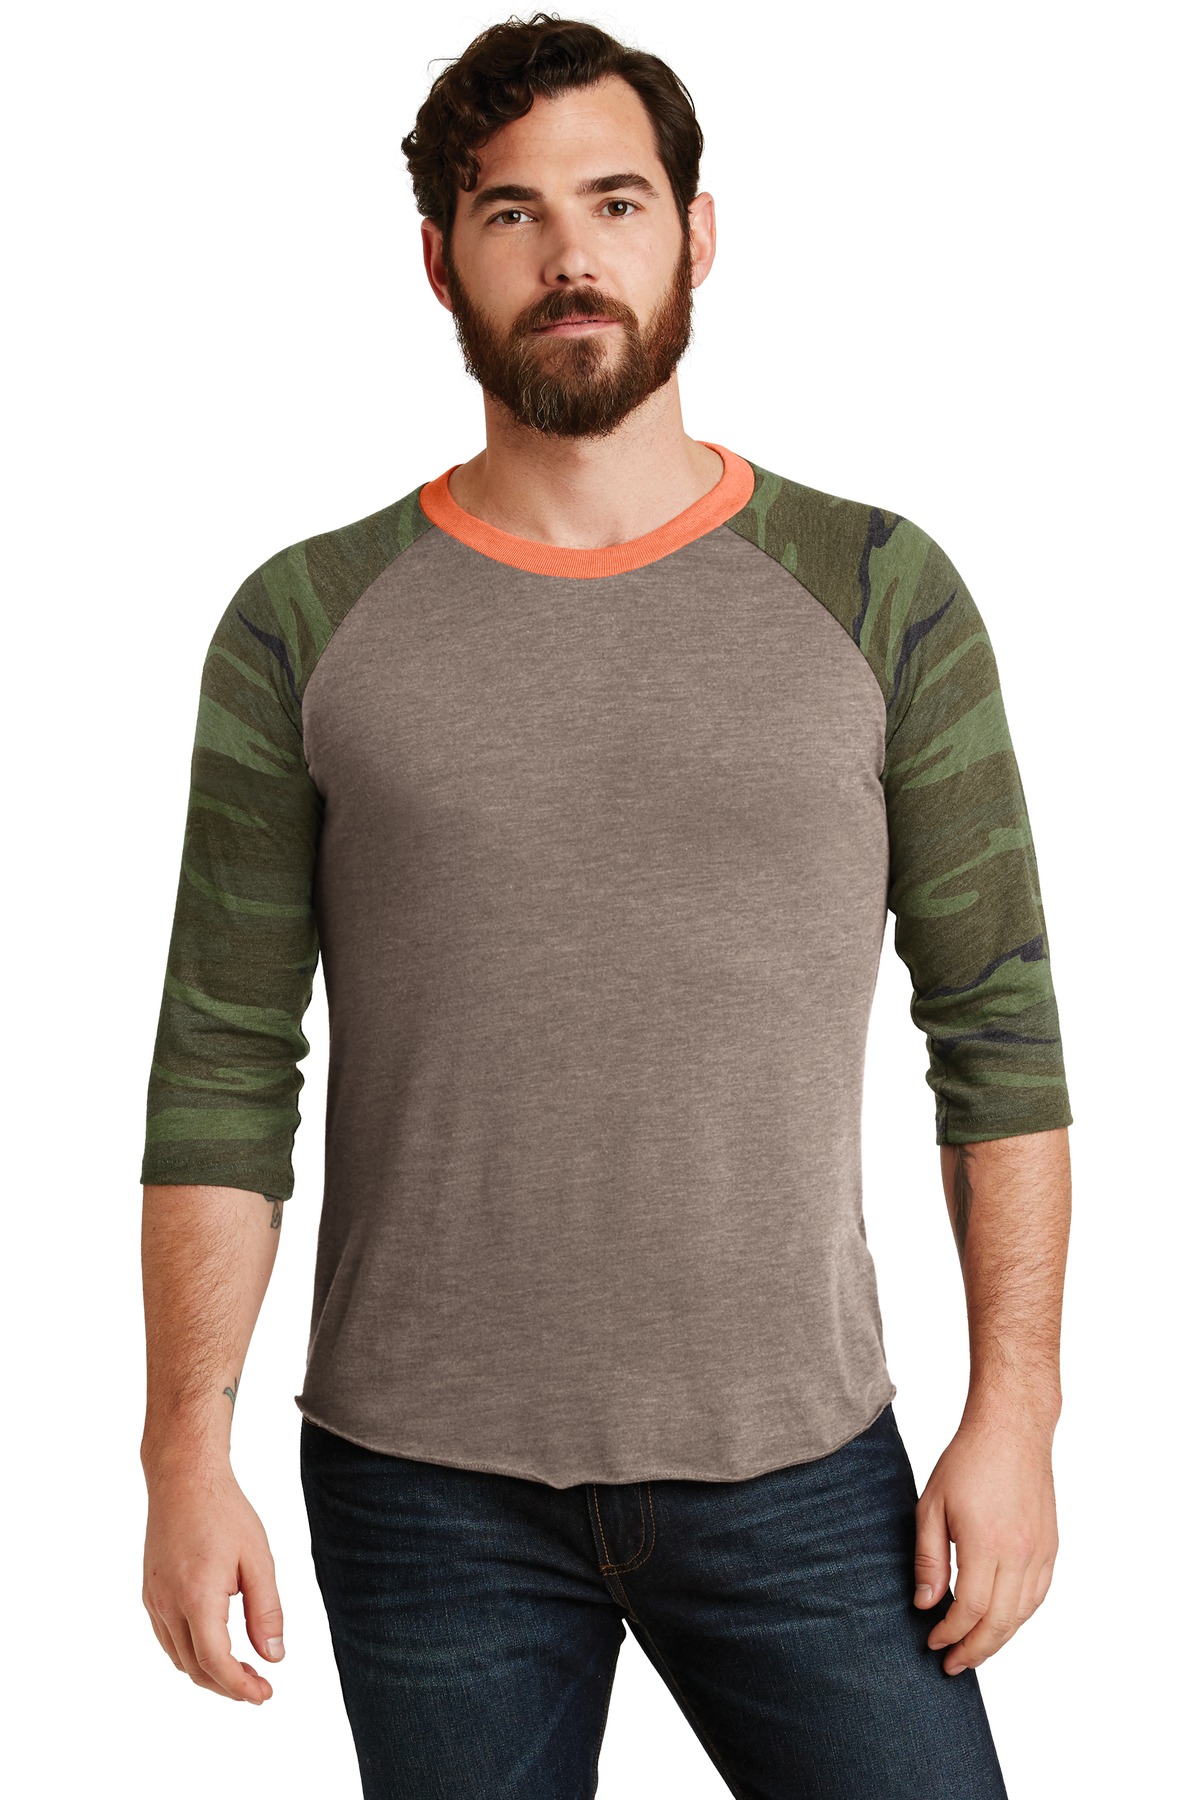 Carhartt Force Cotton Delmont Short Sleeve T-Shirt – Best Choice